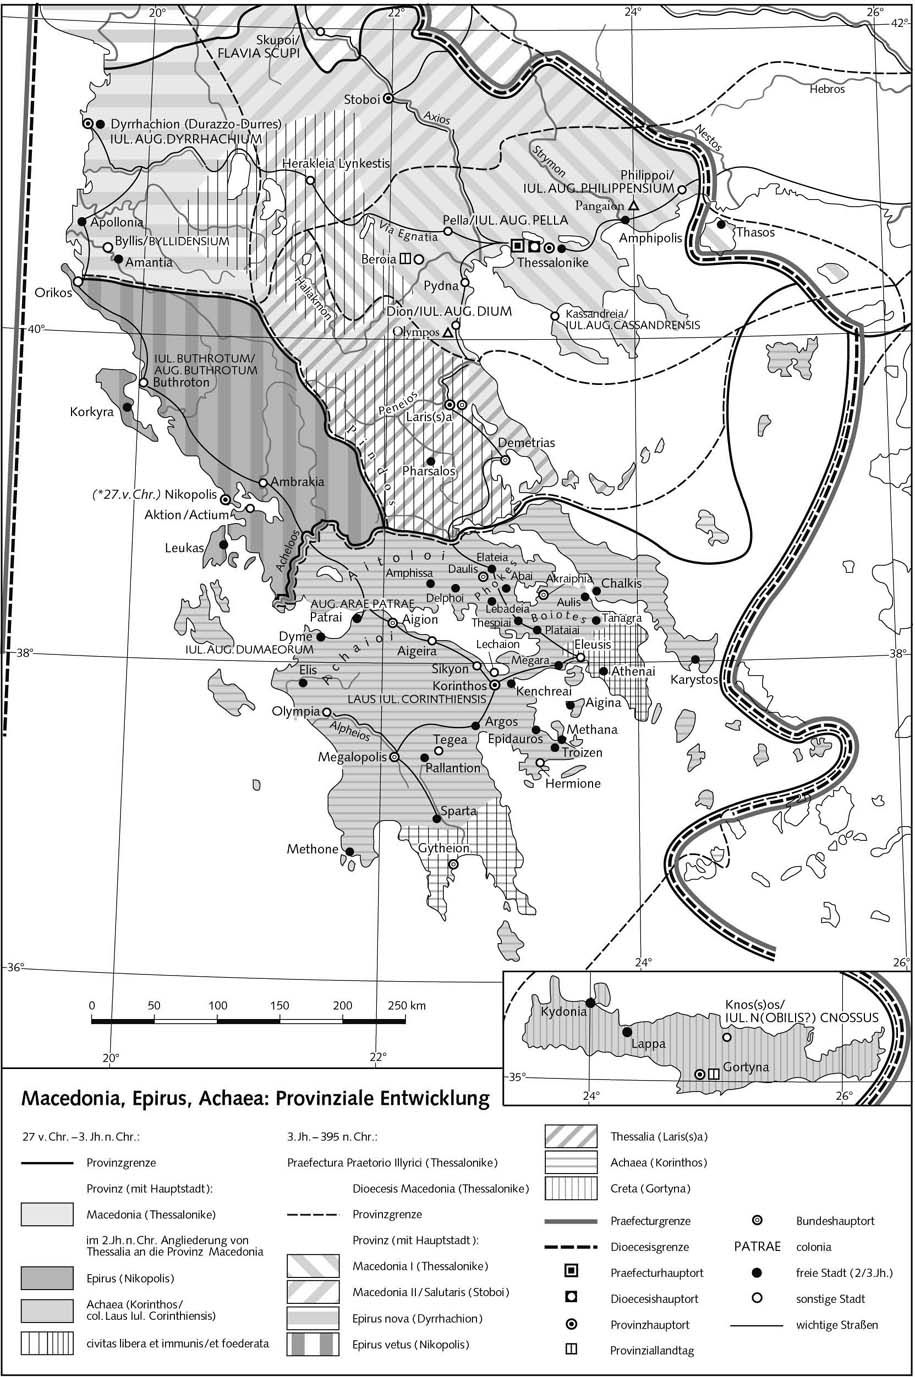 Македония, Эпир, Ахея: развитие провинций - Карта